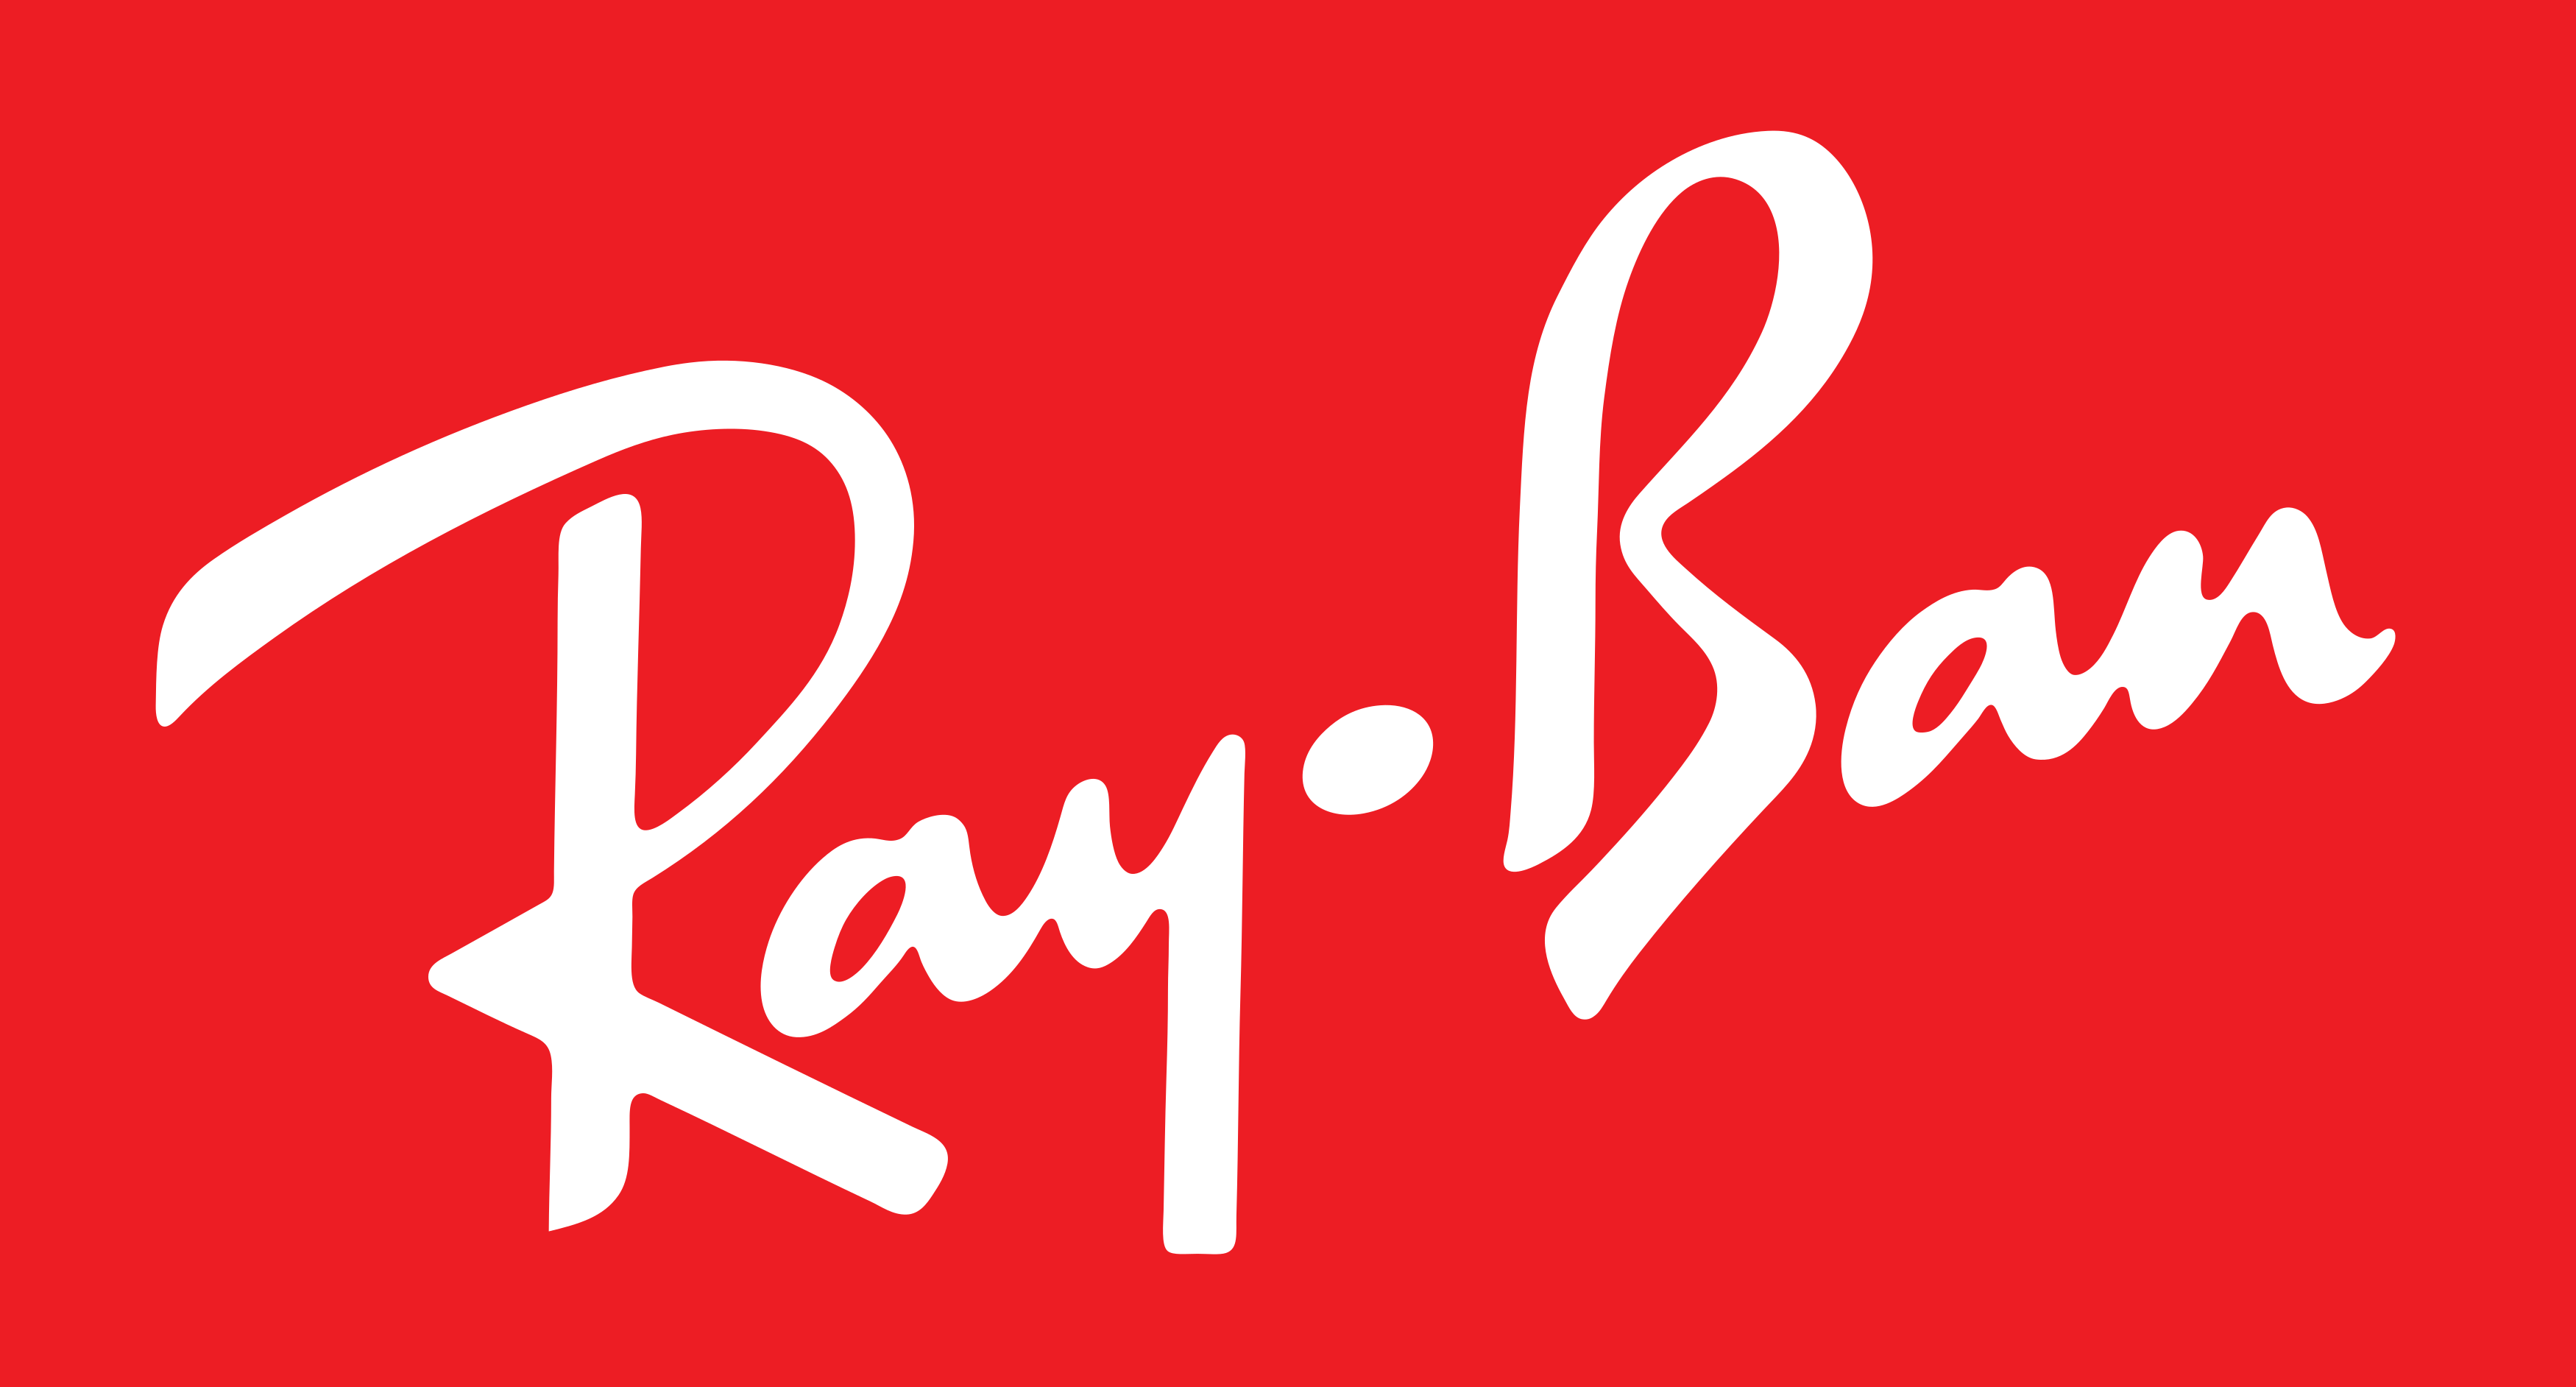 Logo de Ray Ban SVG